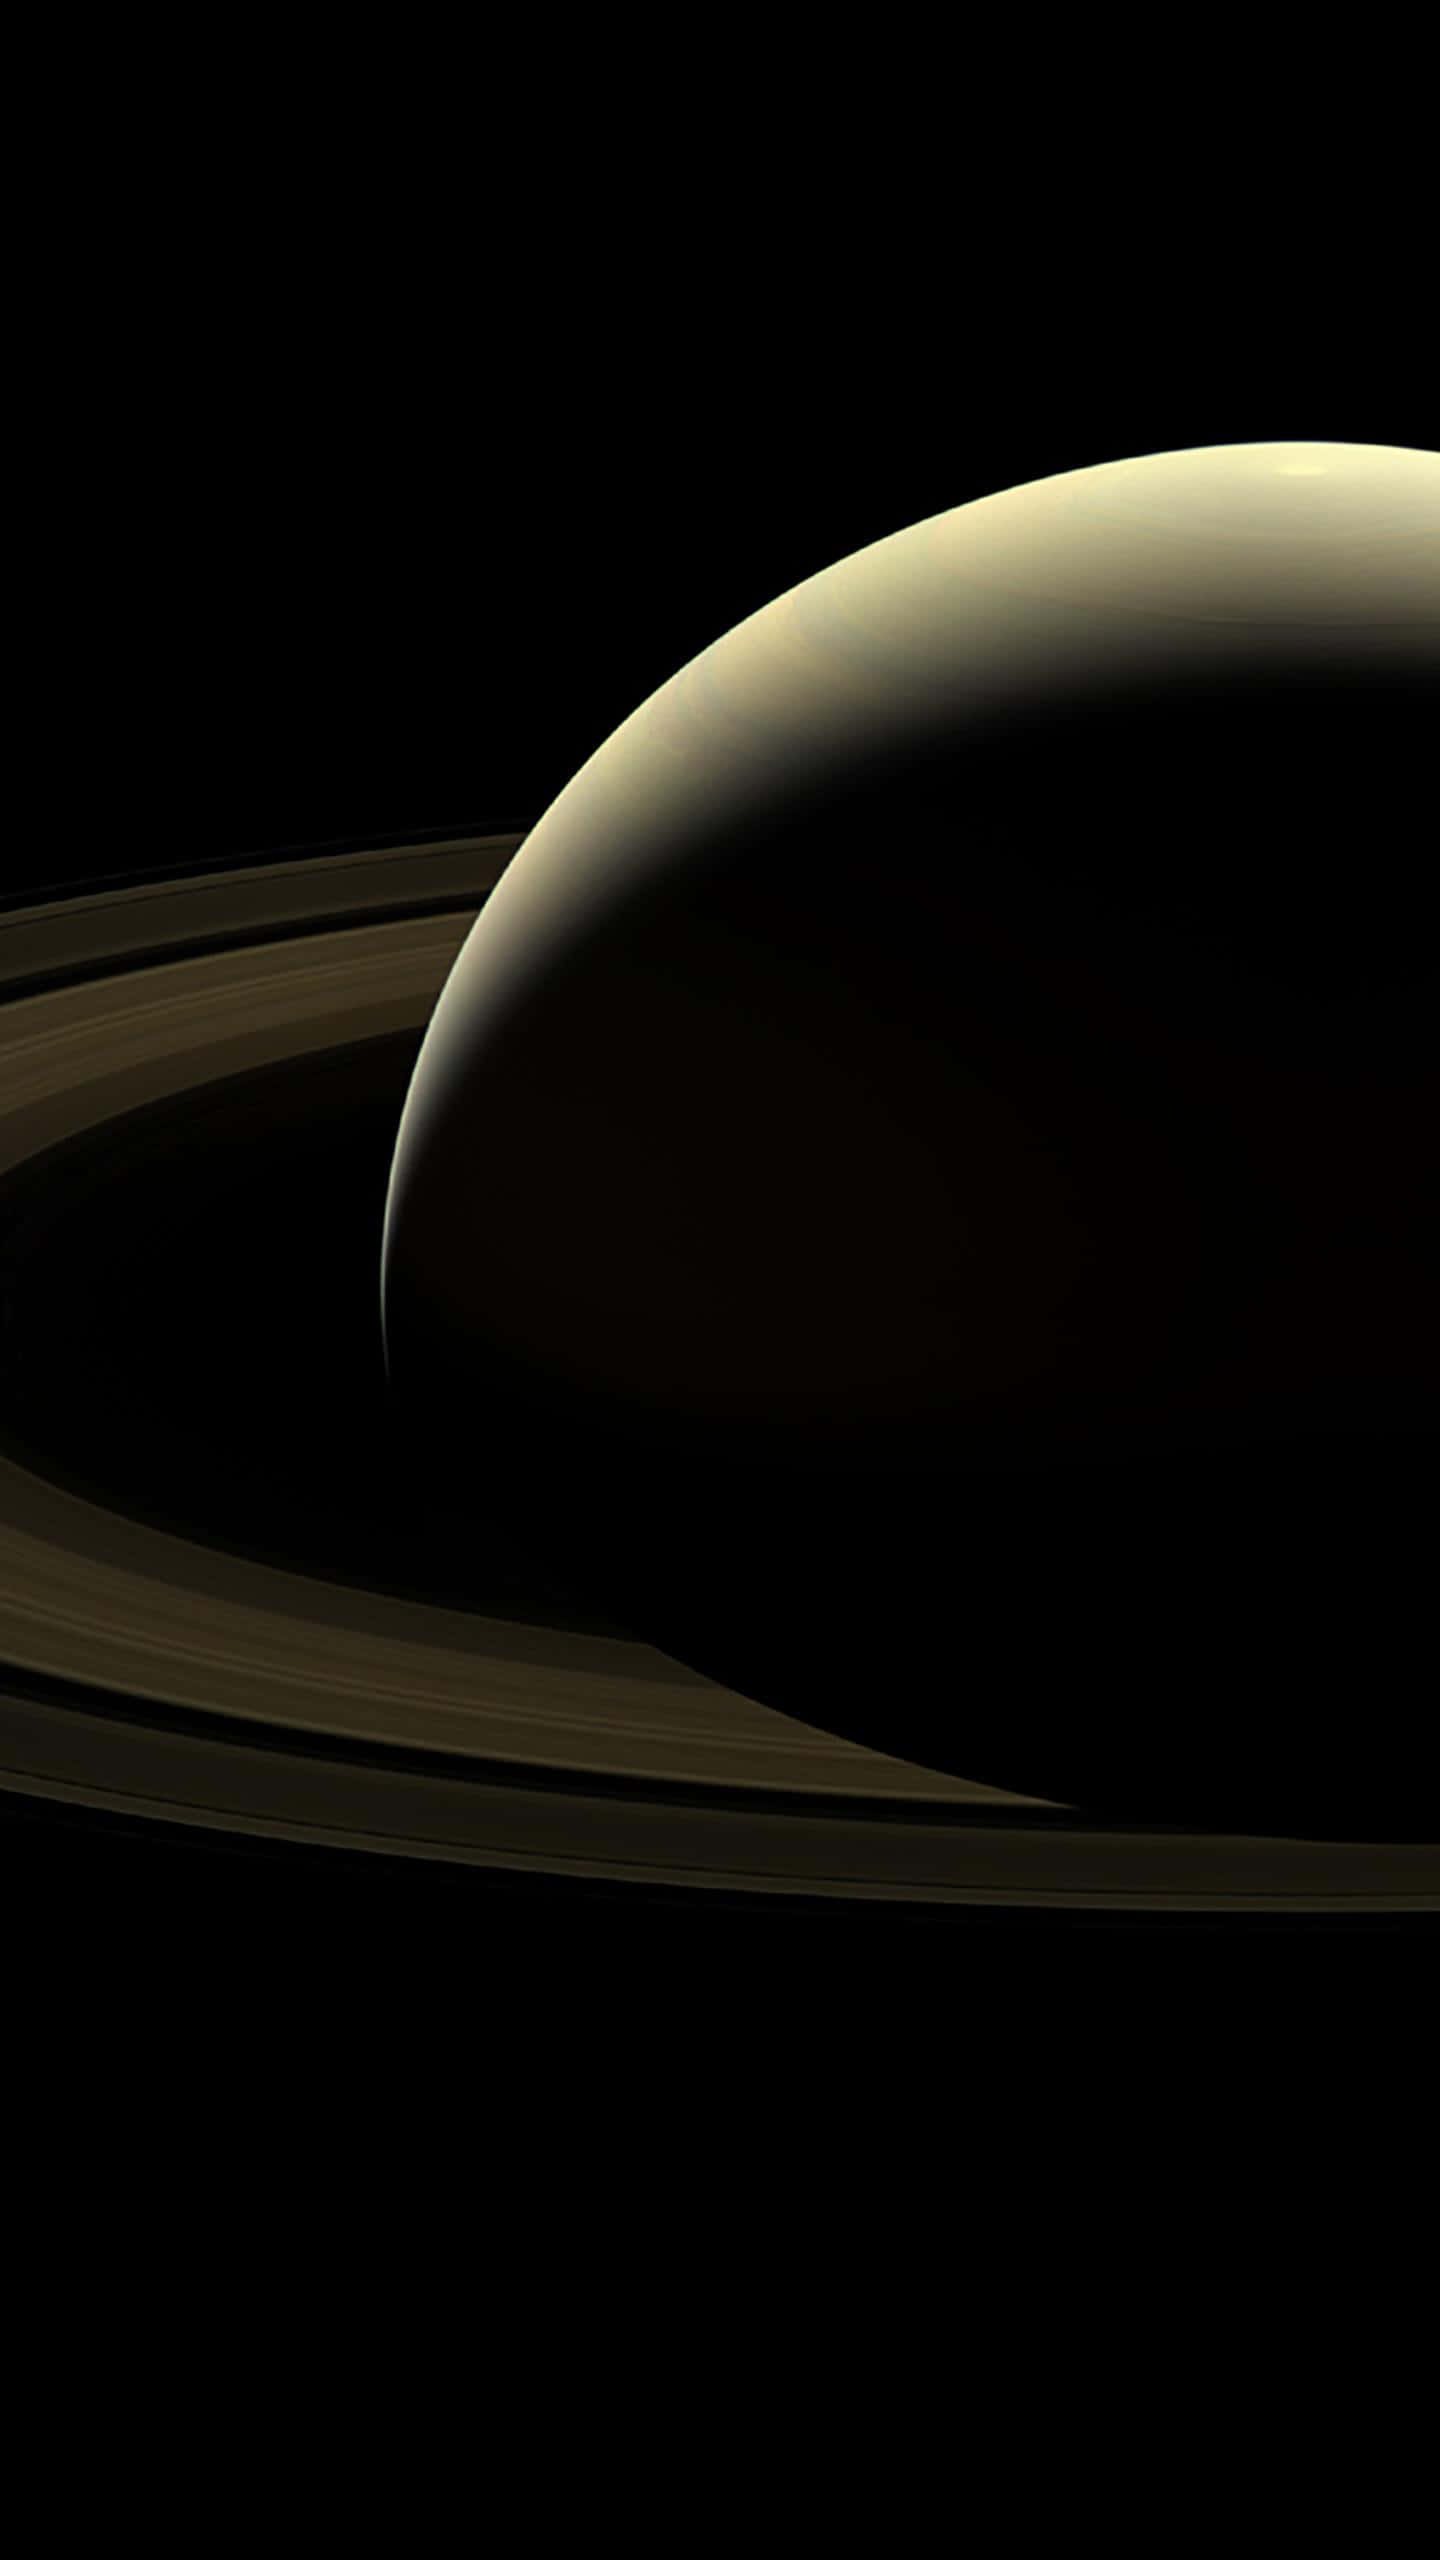 Glianelli Di Saturno Sono Visibili In Questa Immagine.